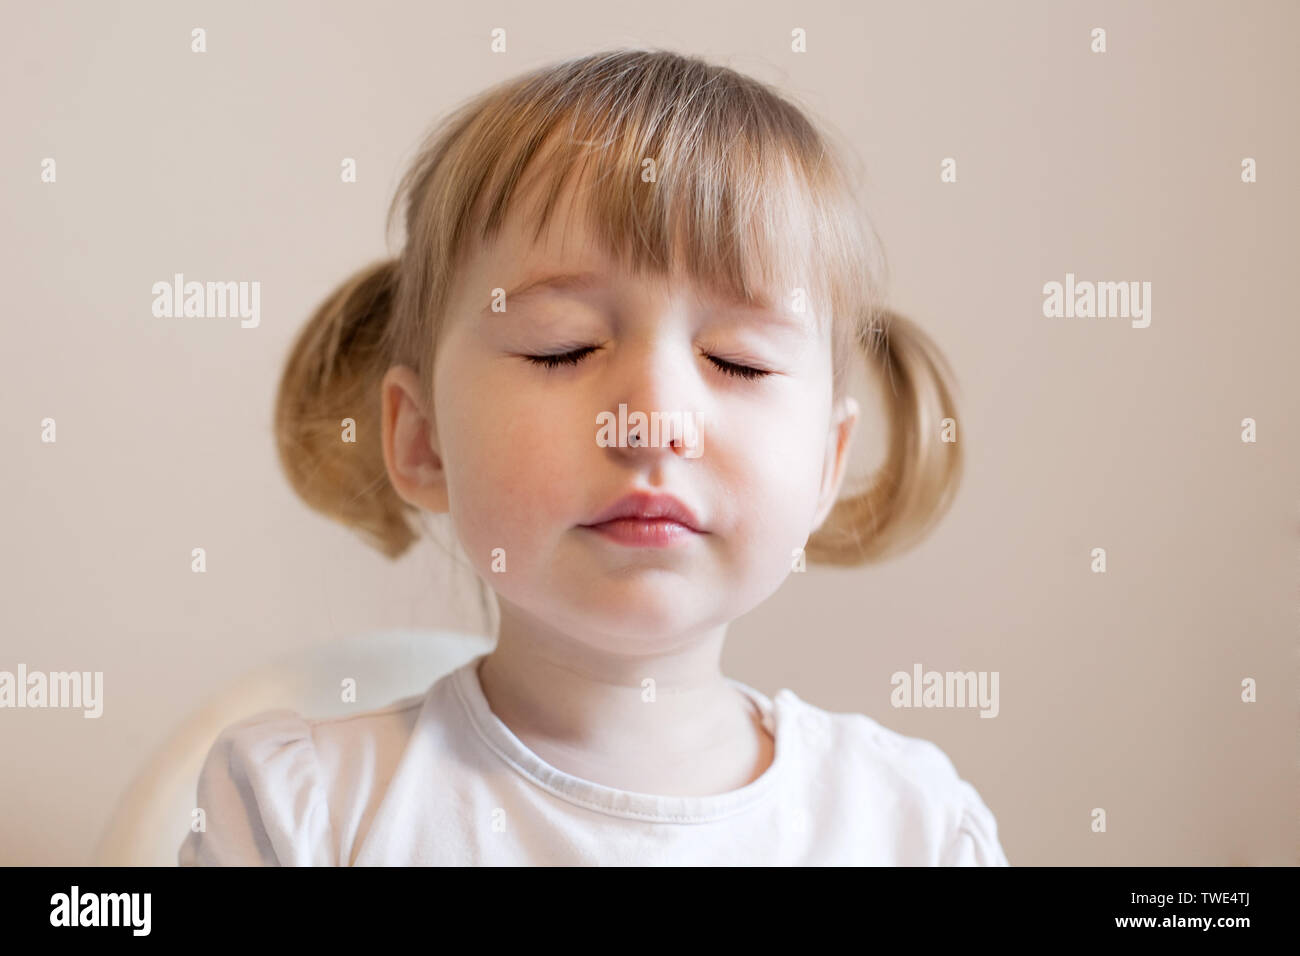 Funny niña con dos cute pigtails, quiff y ojos cerrados Foto de stock